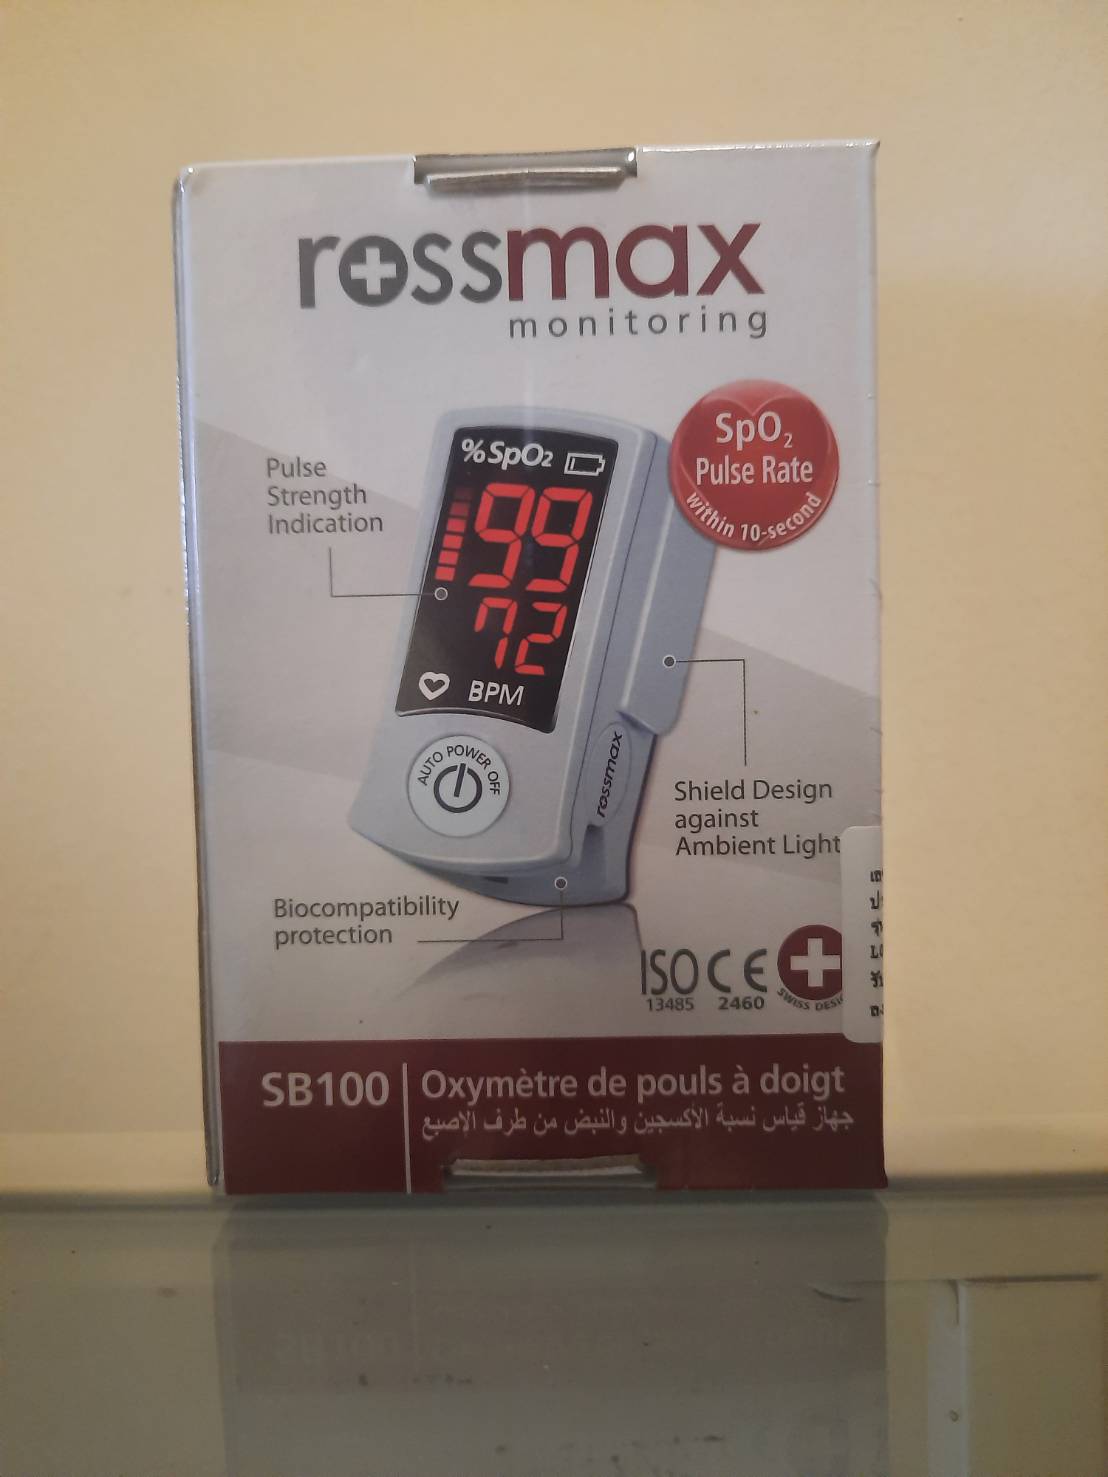 ส่งฟรี ( รับประกัน 1 ปี) เครื่องวัดออกซิเจนปลายนิ้ว ROSSMAX Fingertip Pulse Oximeter SB100 เครื่องวัดระดับออกซิเจนปลายนิ้ว เก็บเงินปลายทาง